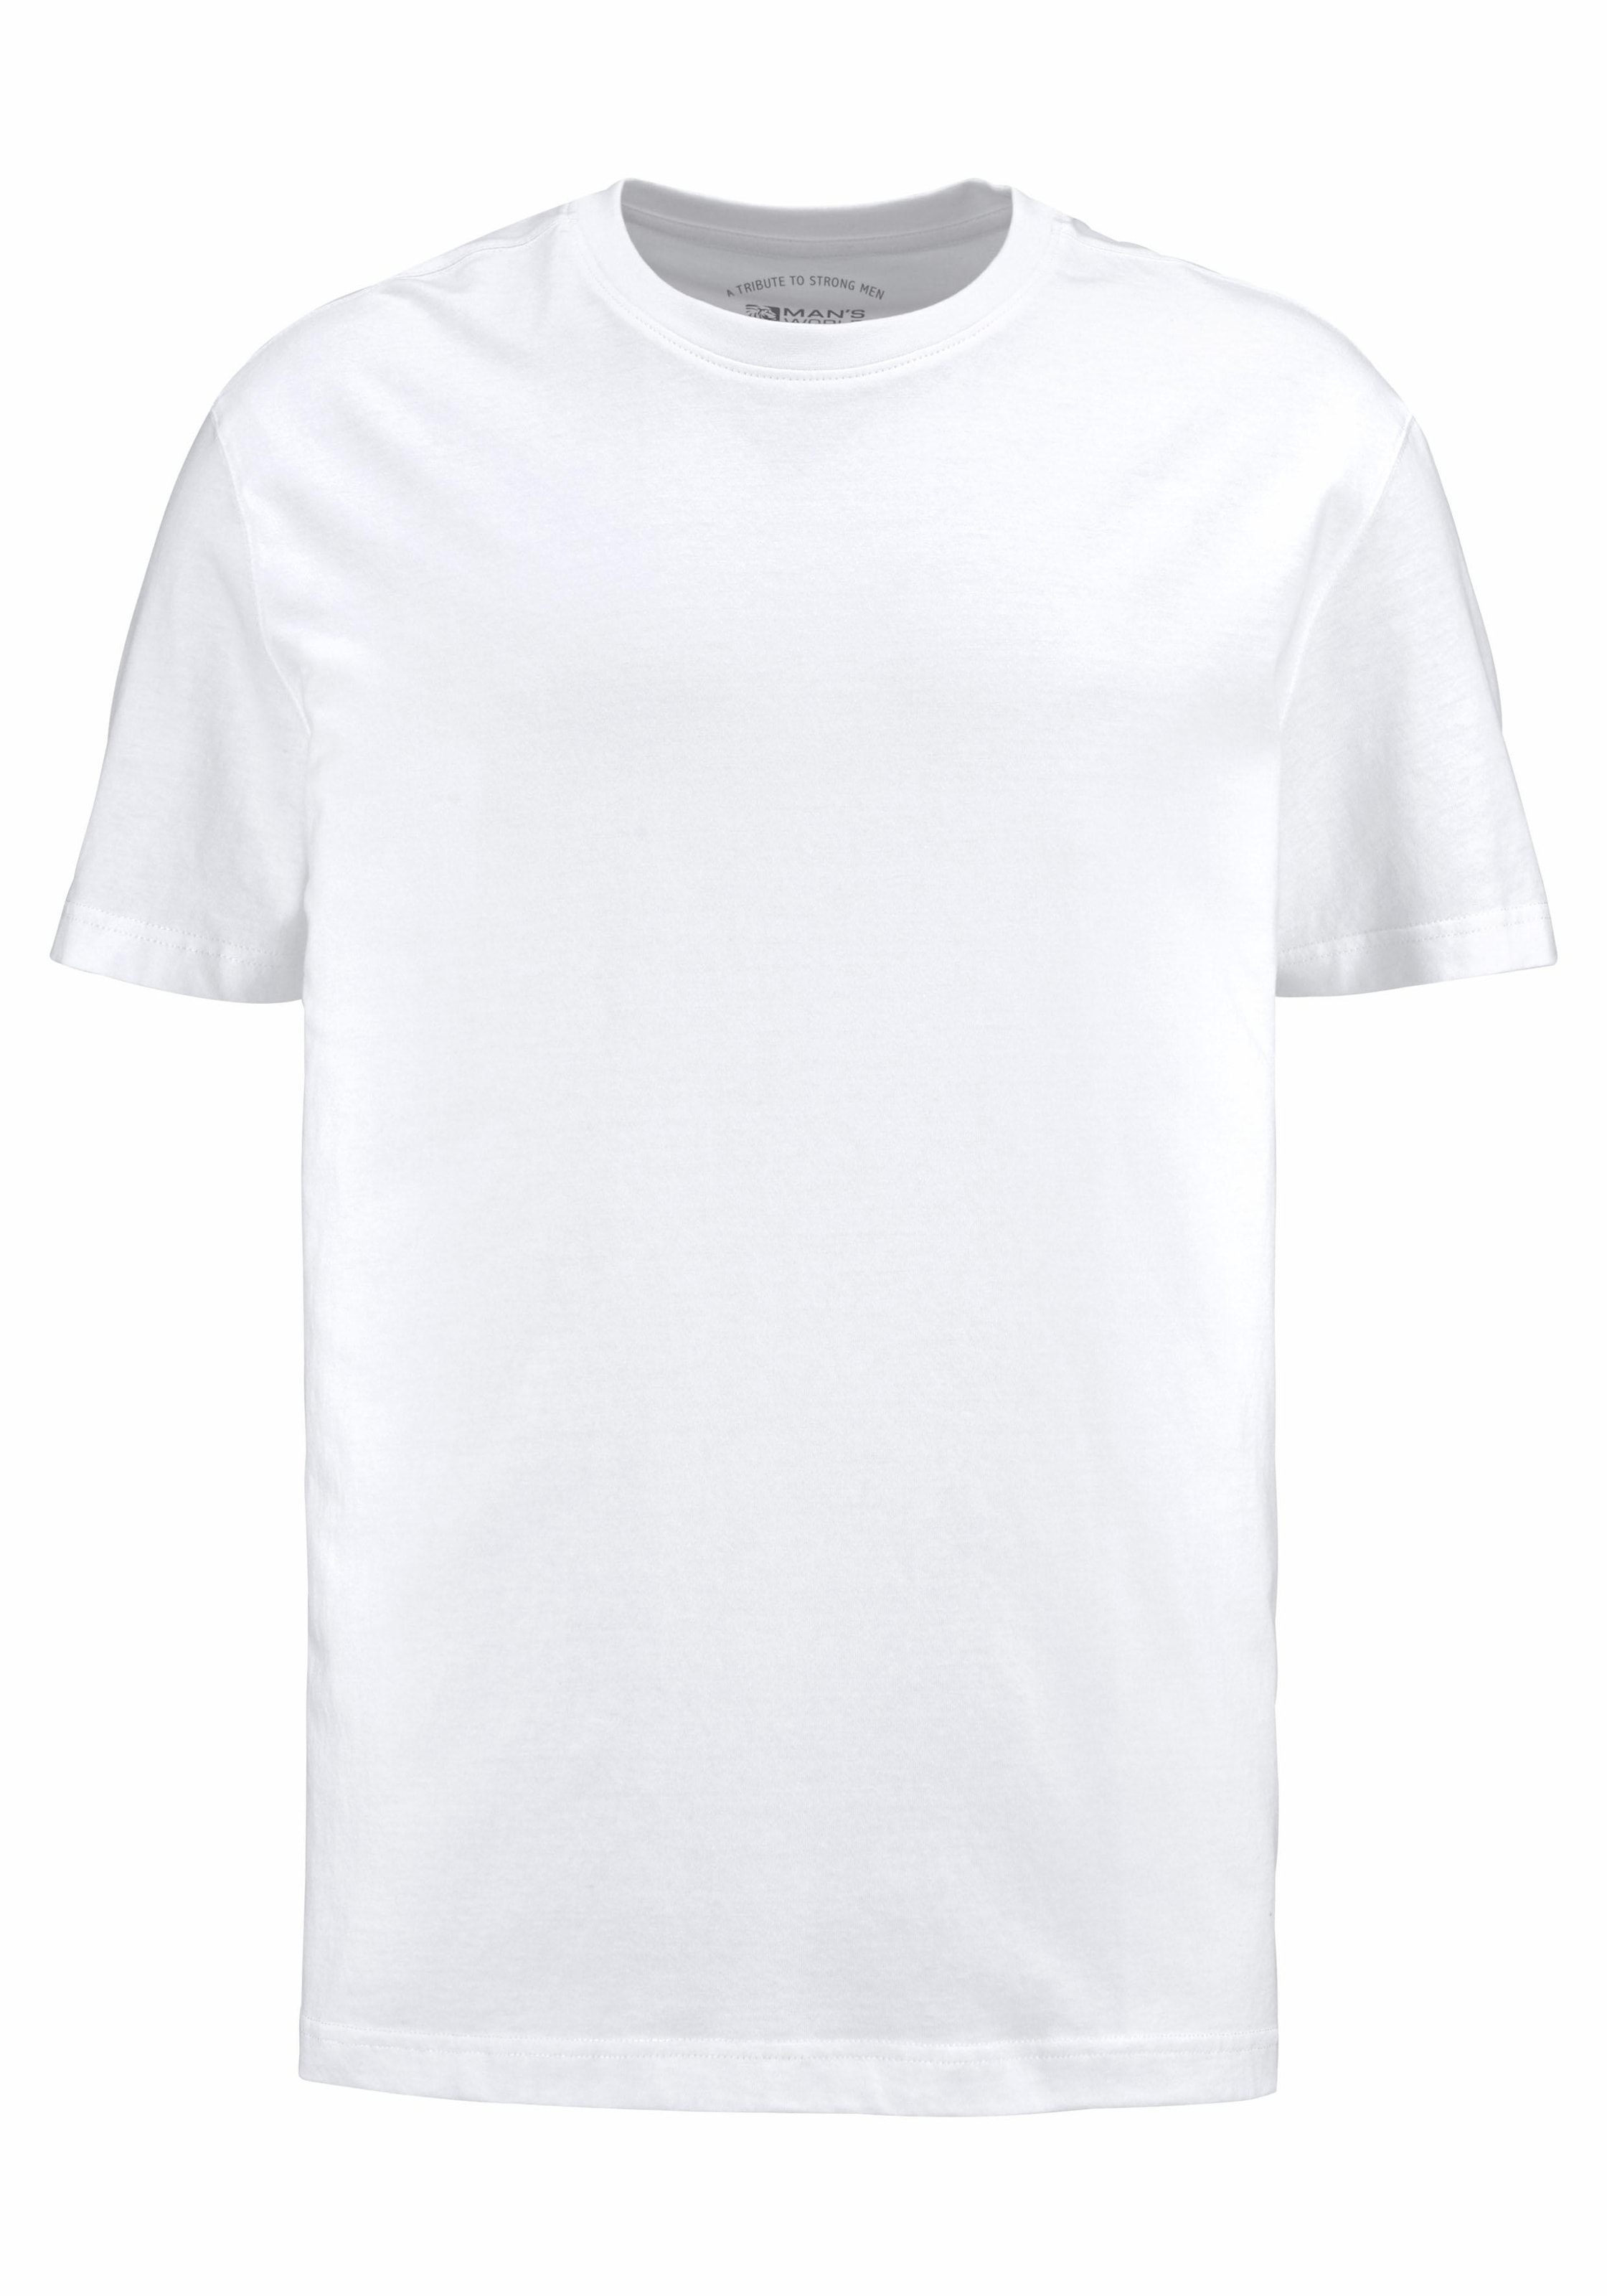 Man's World T-Shirt, Basic Farben